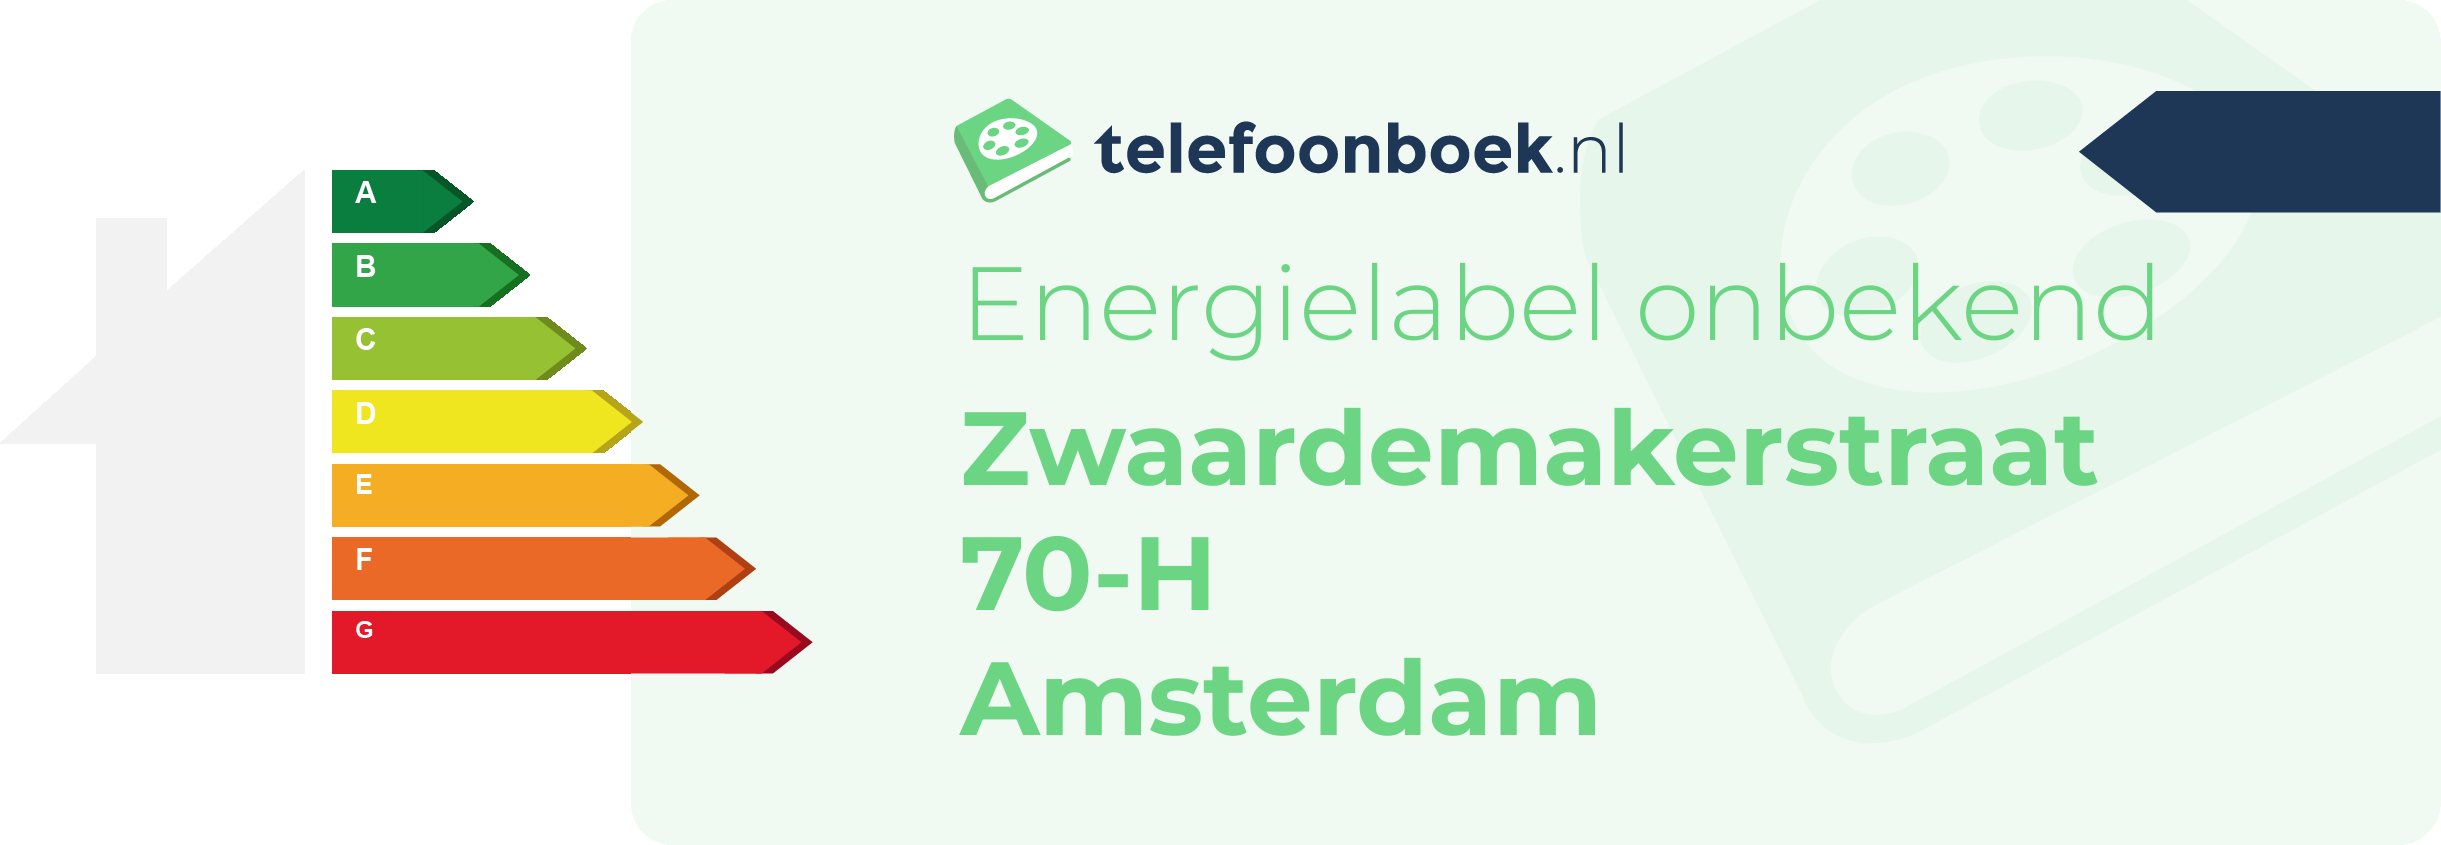 Energielabel Zwaardemakerstraat 70-H Amsterdam